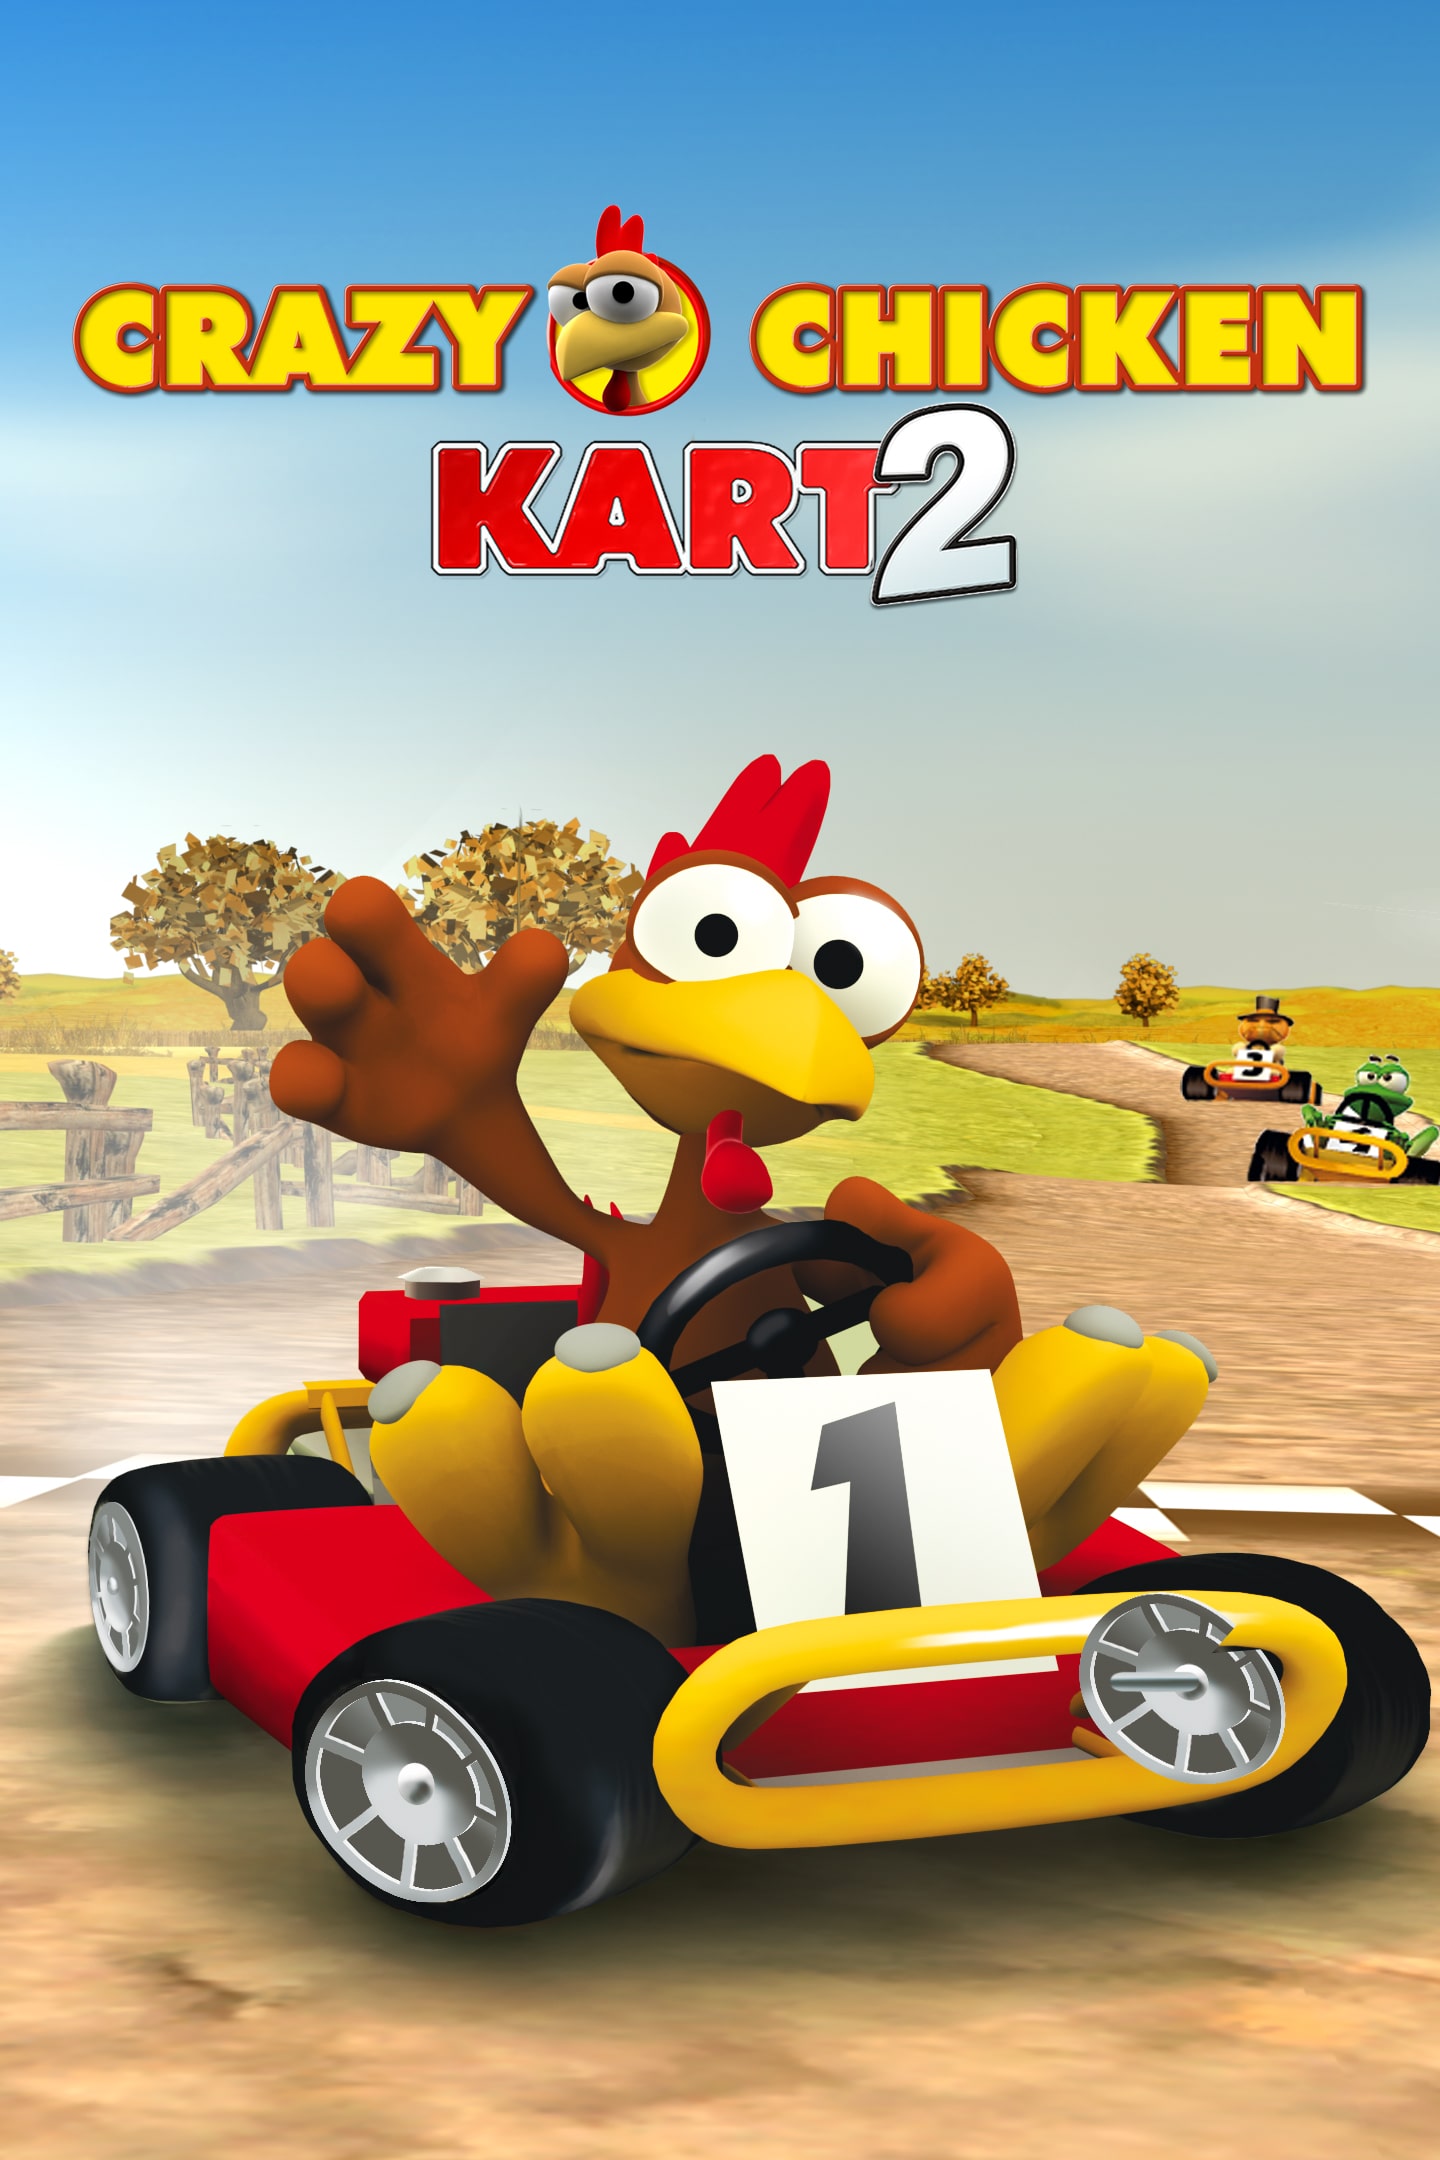 2 Chicken Crazy Kart